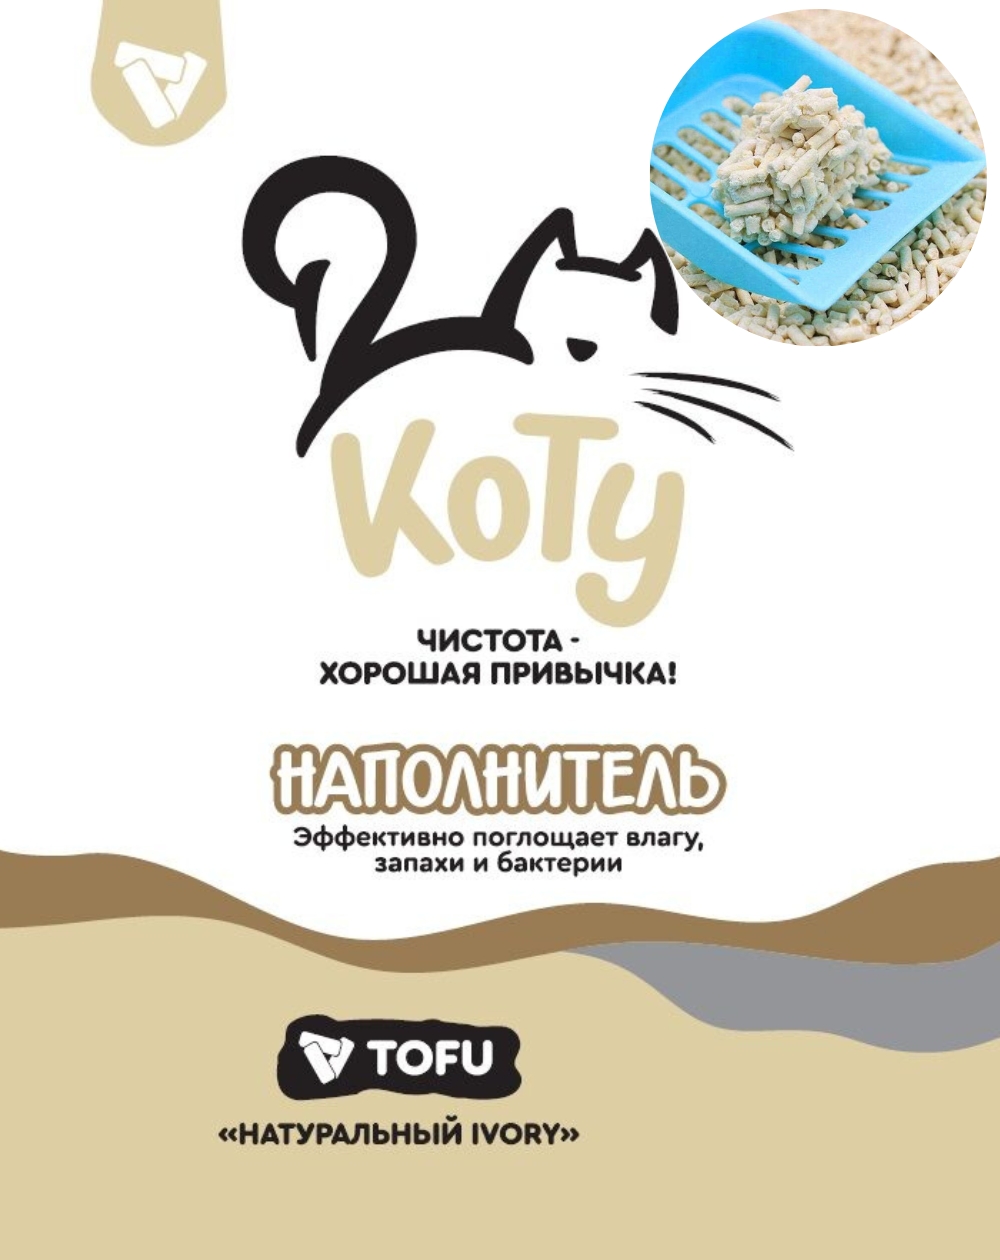 Наполнитель КОТУ TOFU для кошек, натуральный IVORY 1